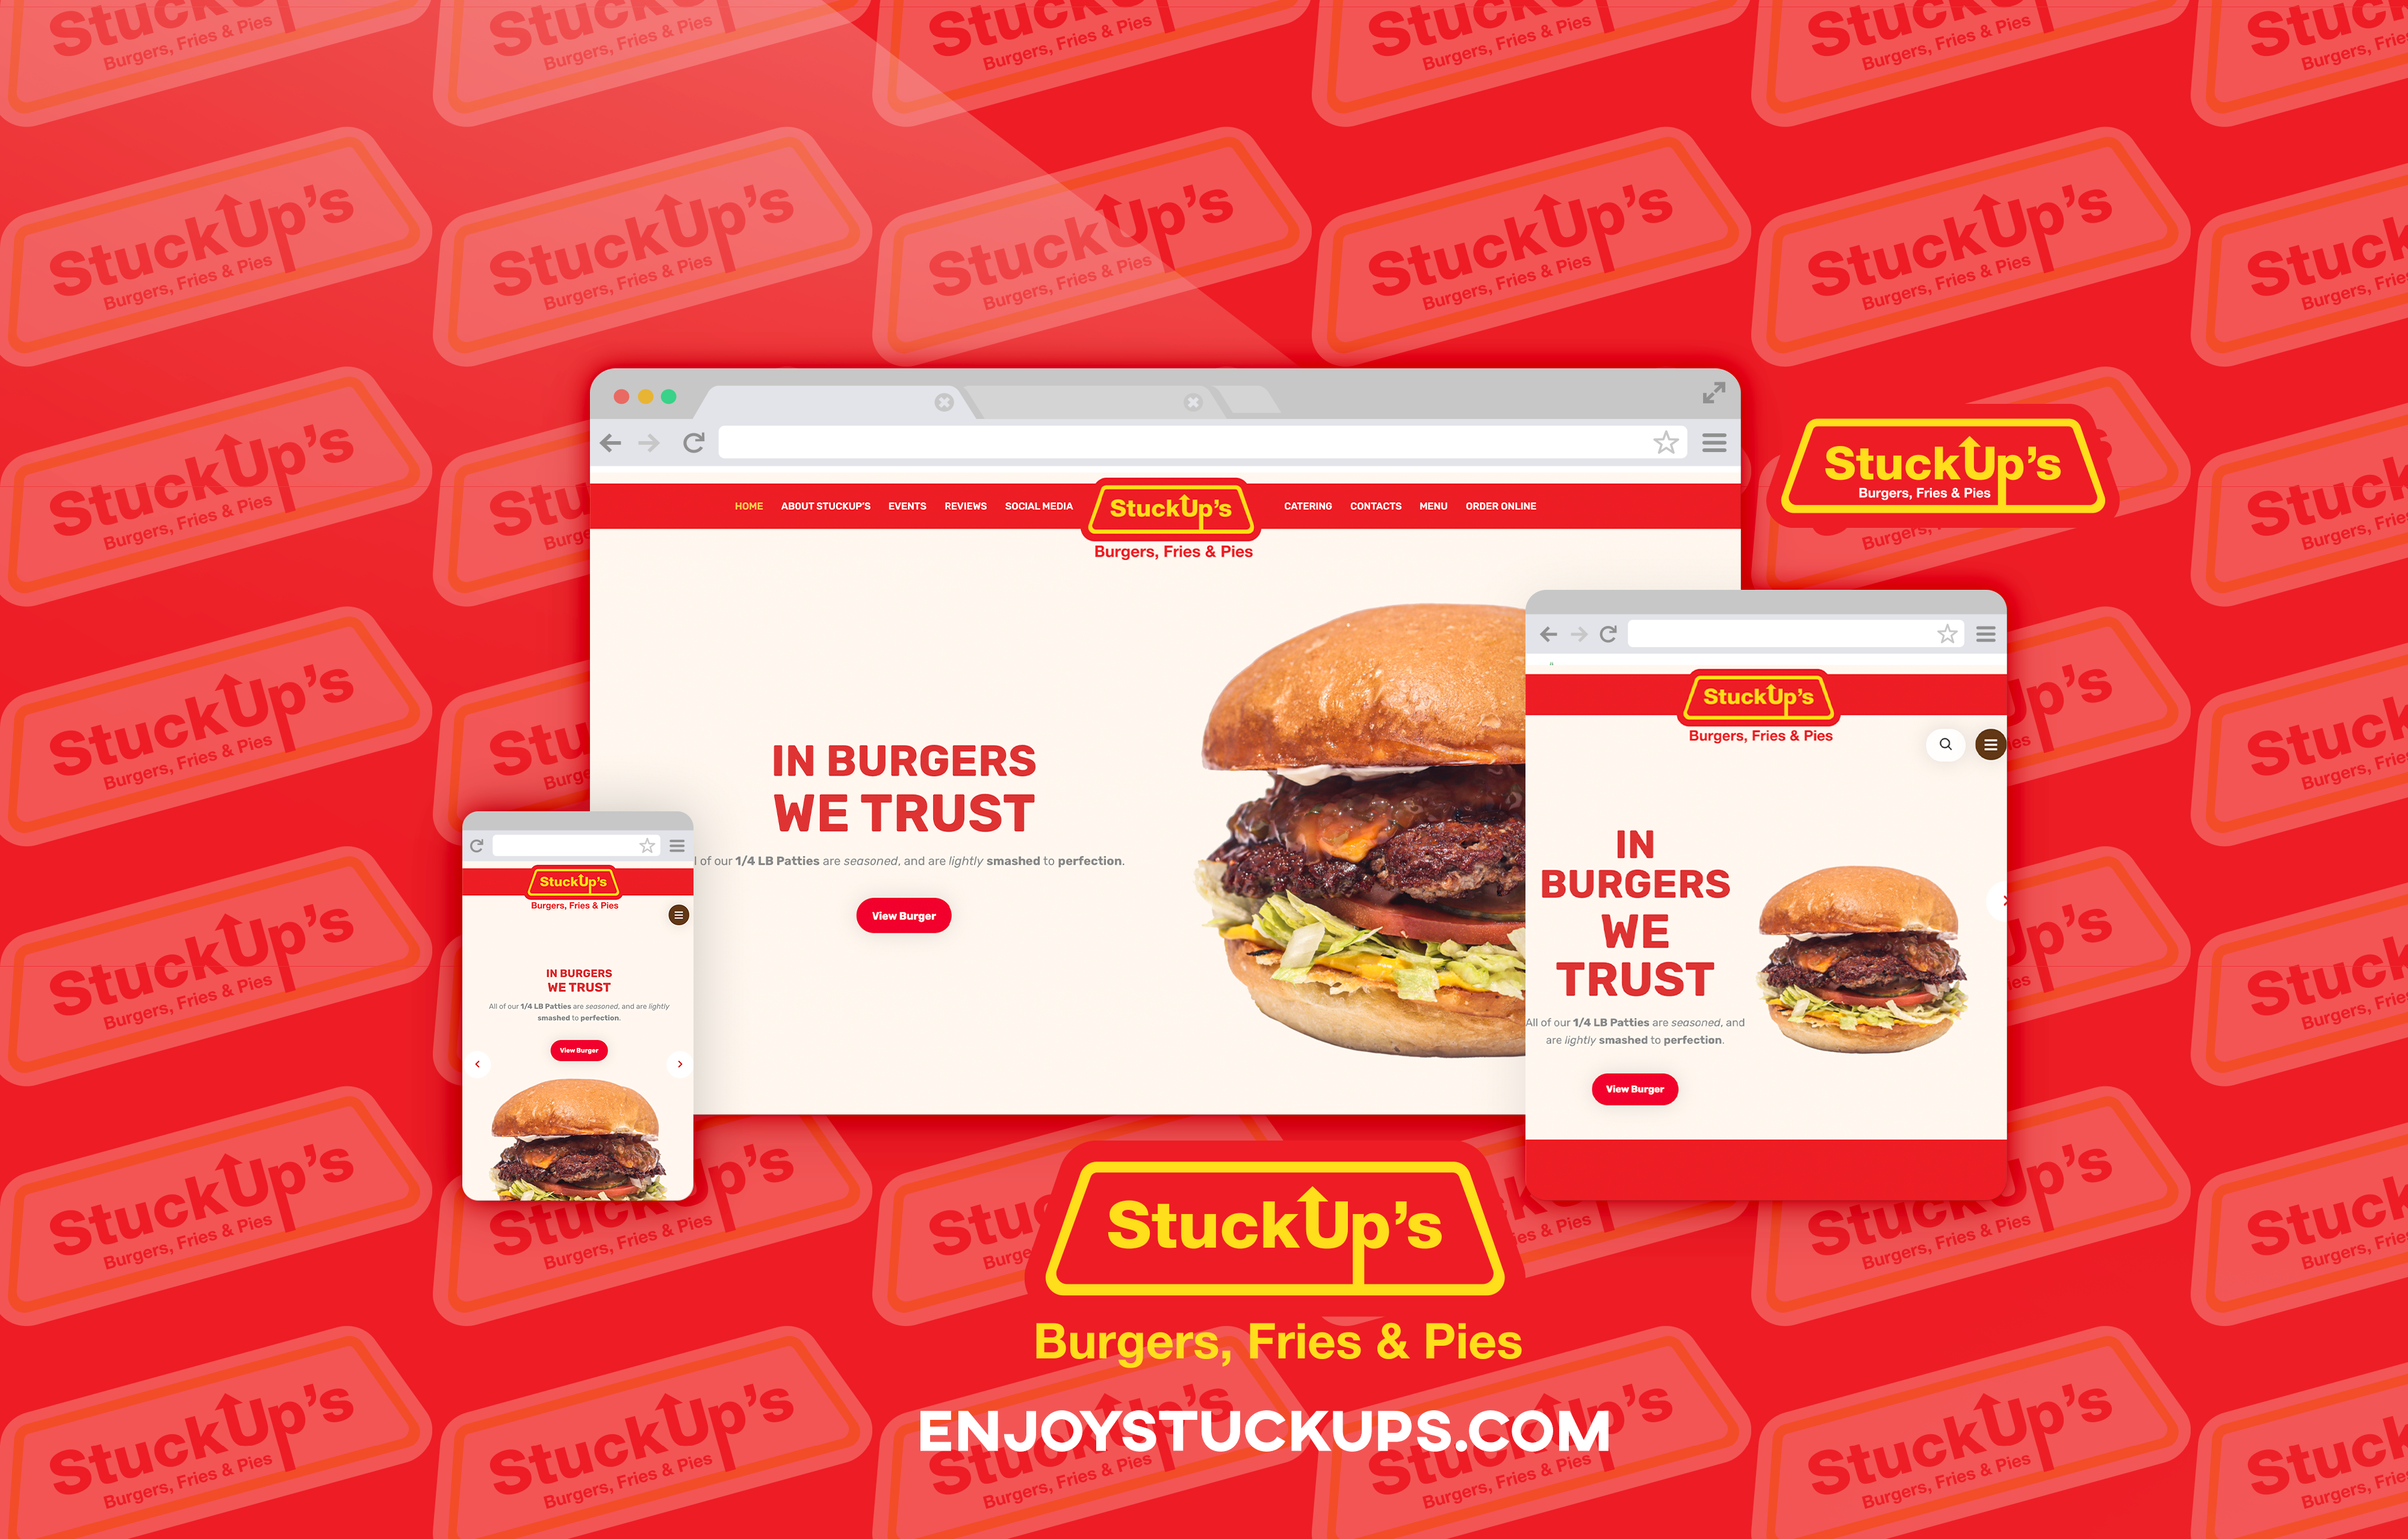 StuckUp’s Burgers